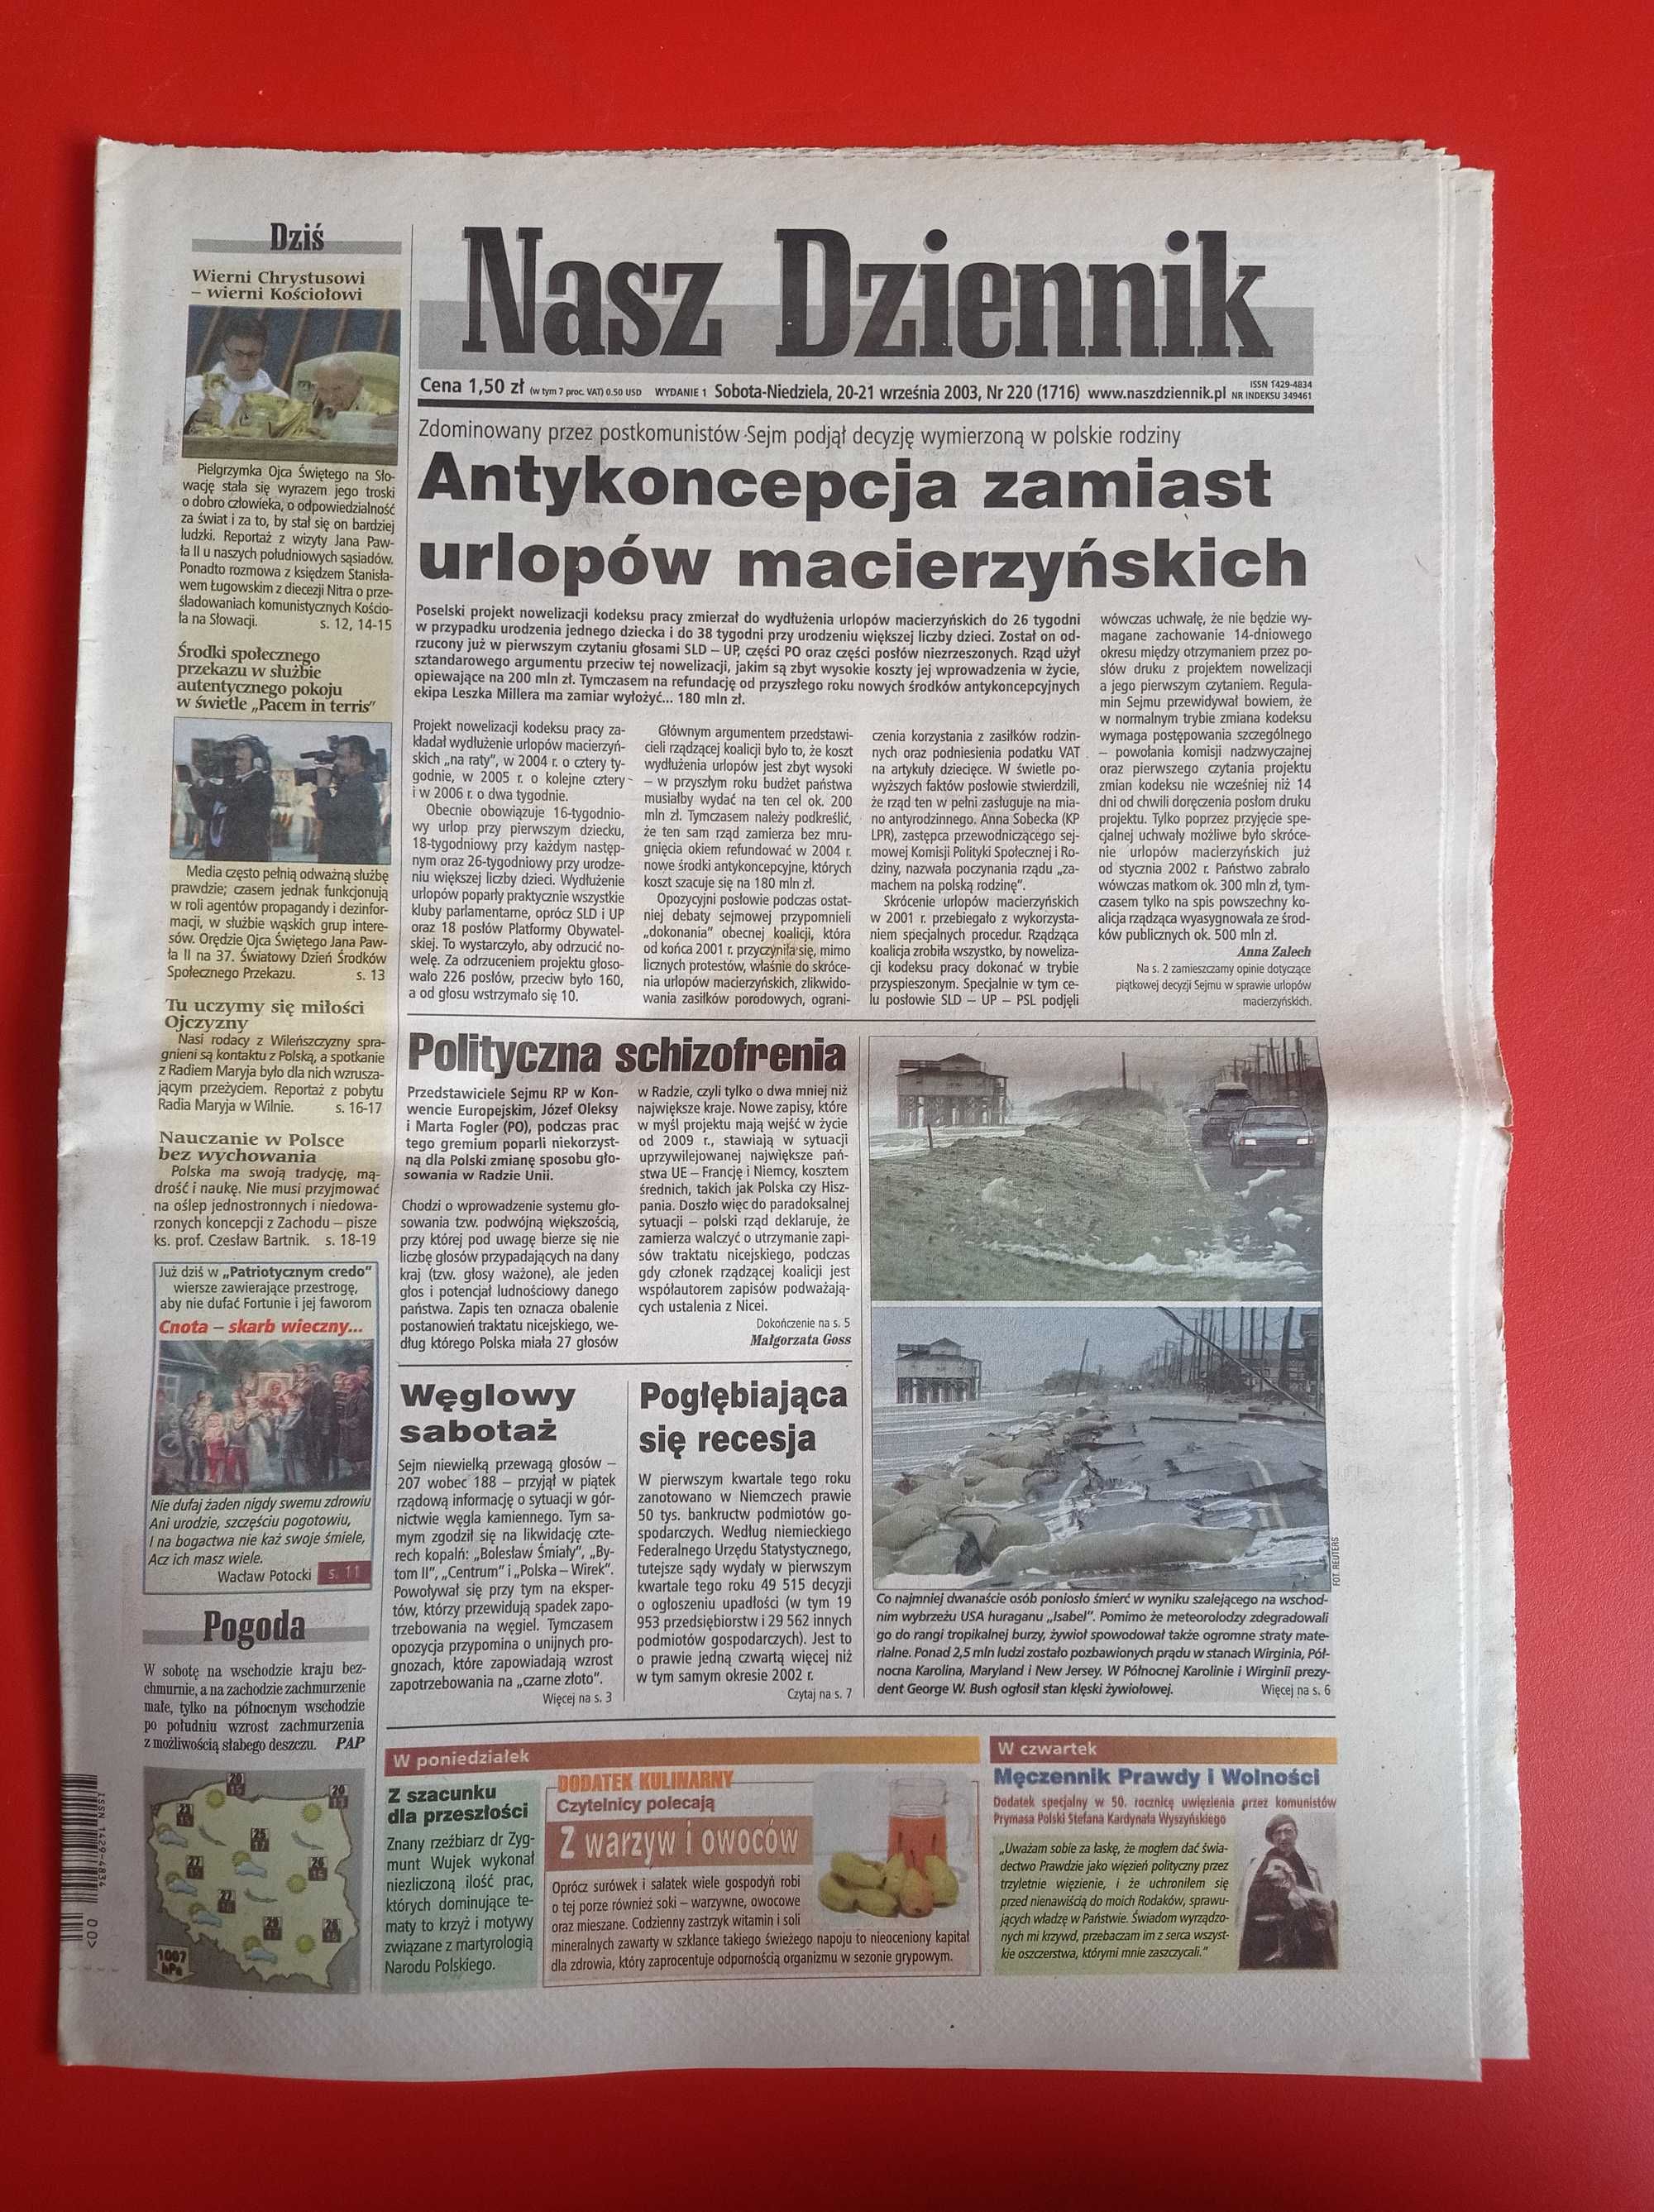 Nasz Dziennik, nr 220/2003, 20-21 września 2003